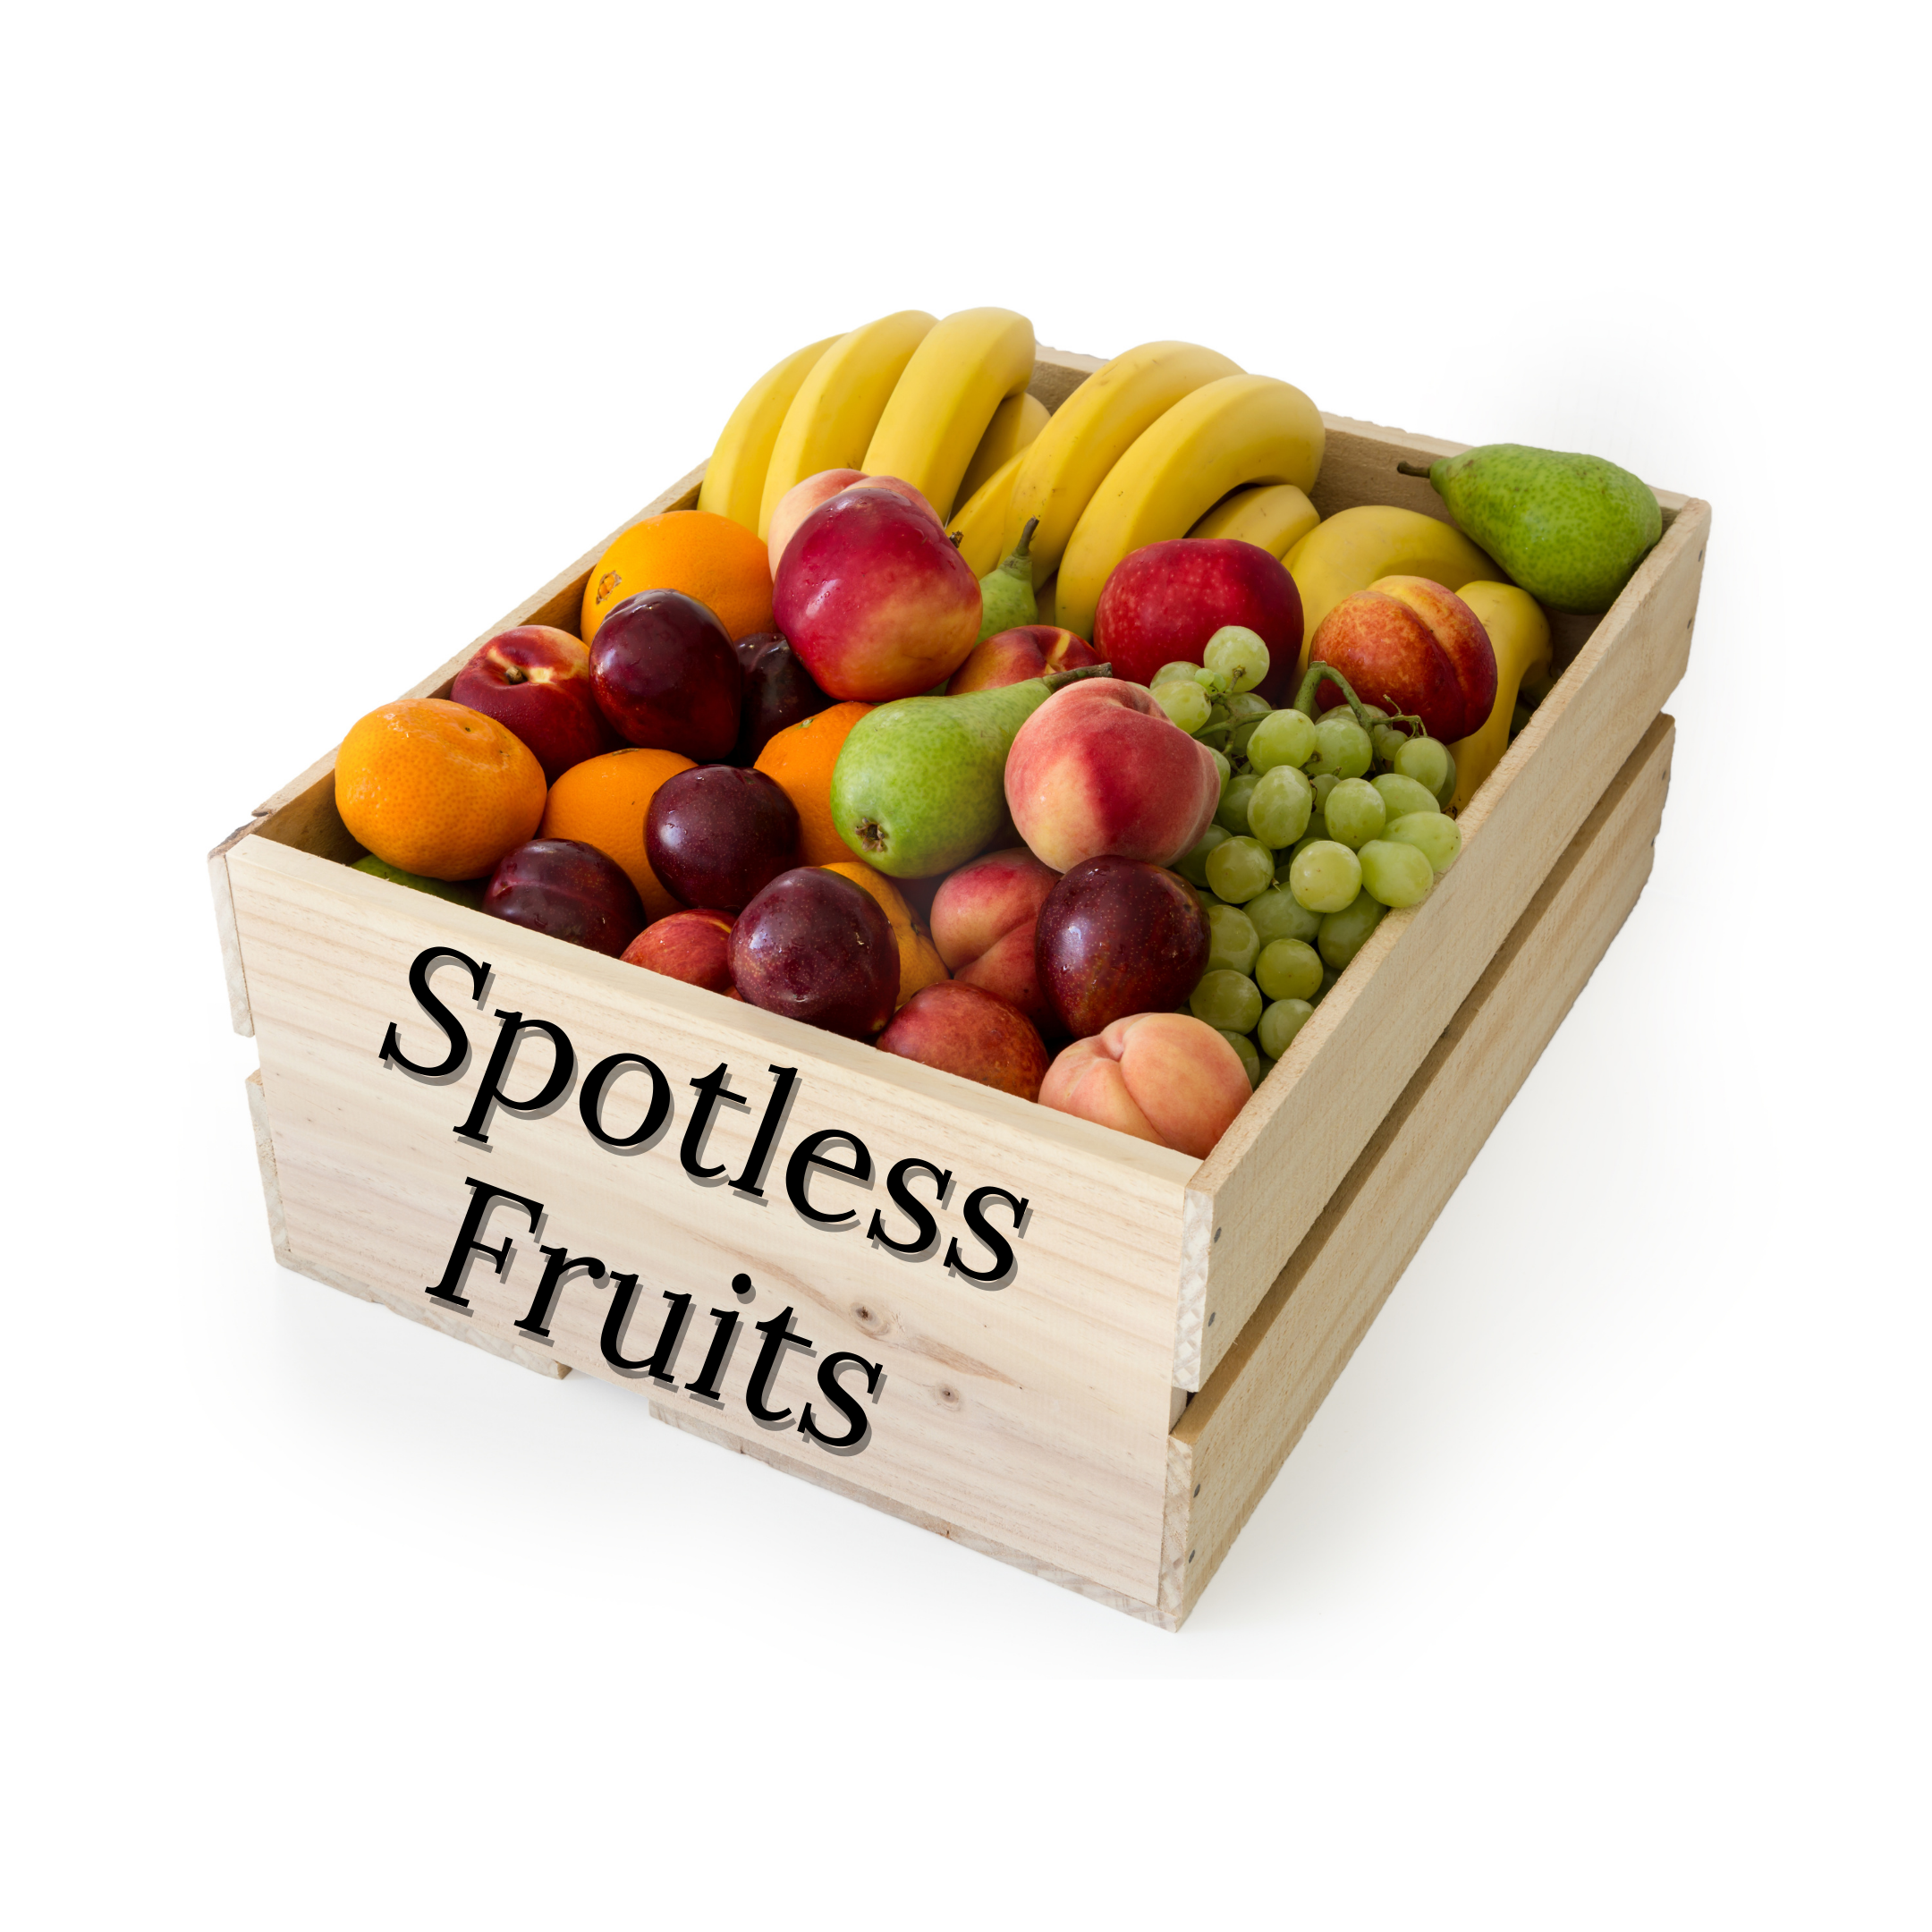 Buy FRESH FRUIT BOX - Spotless Fruits India